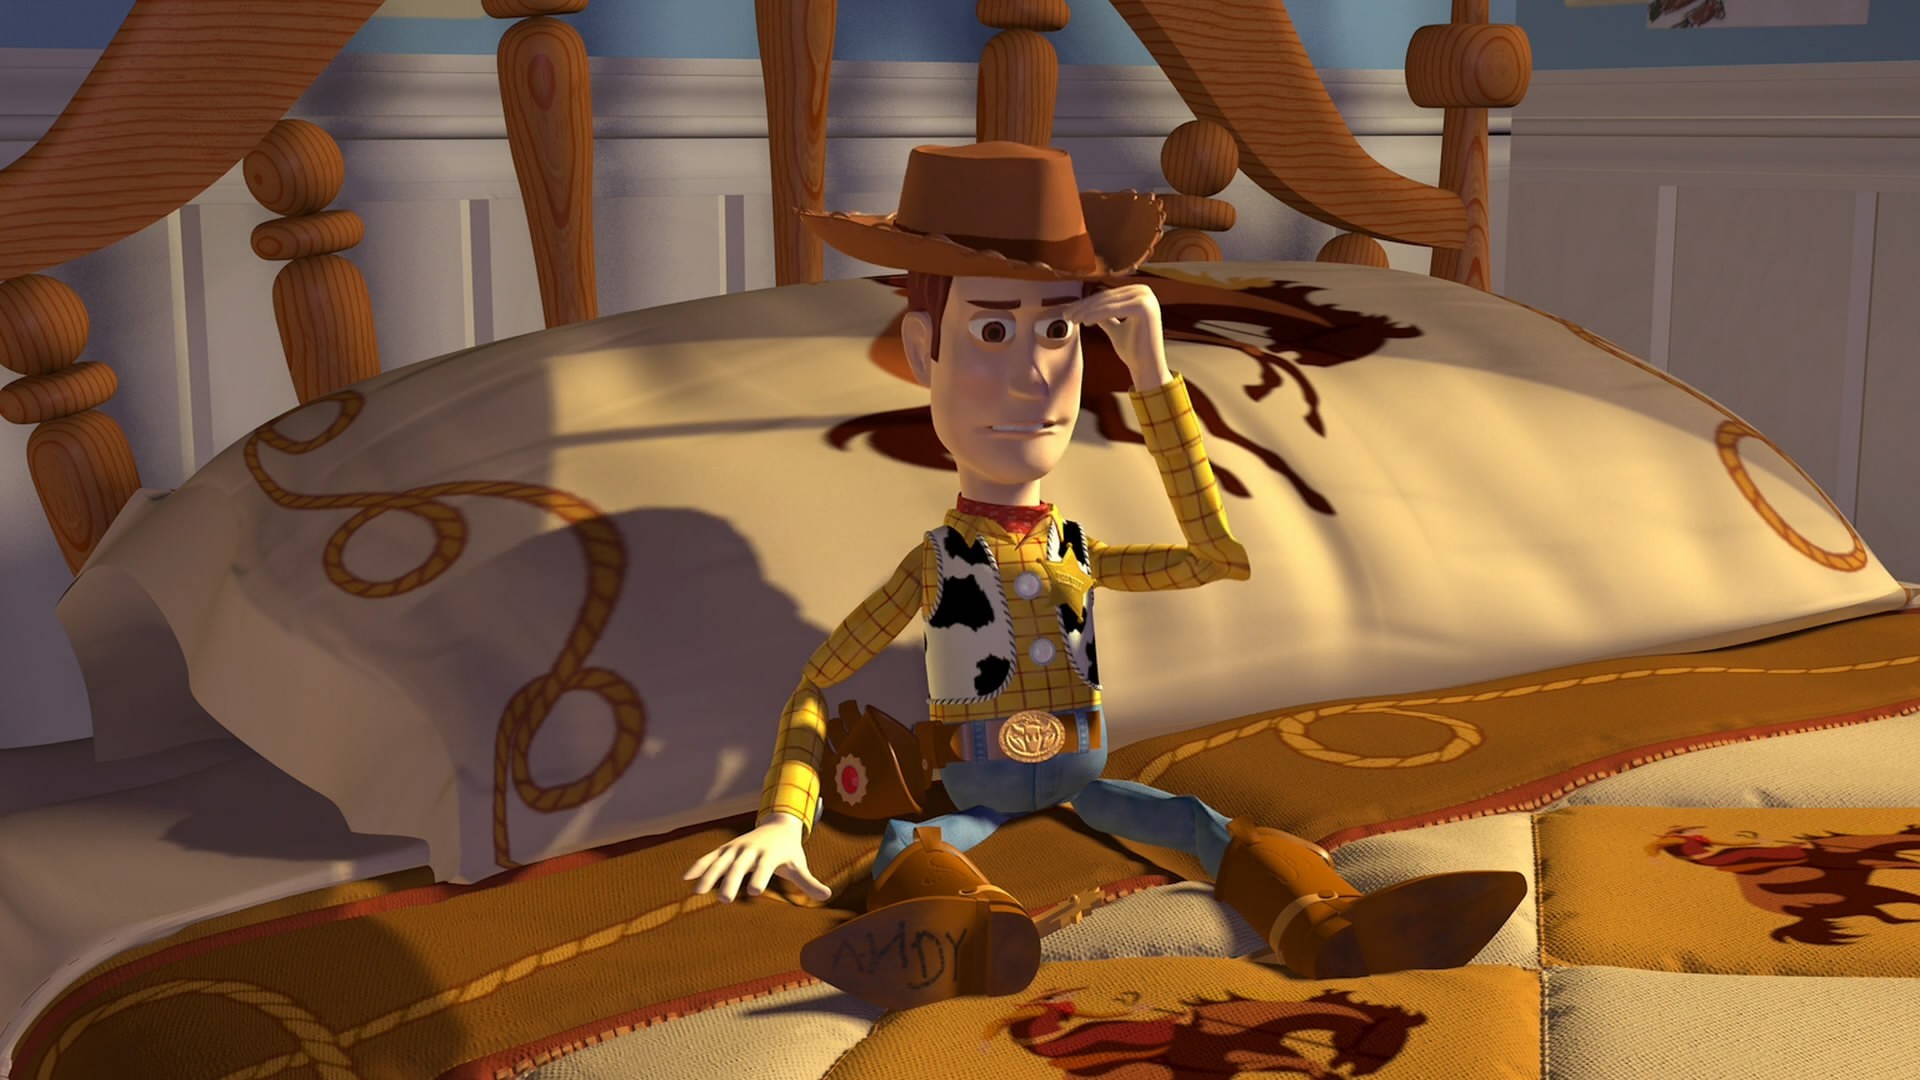 1920x1080 Sheriff Woody Toy Story